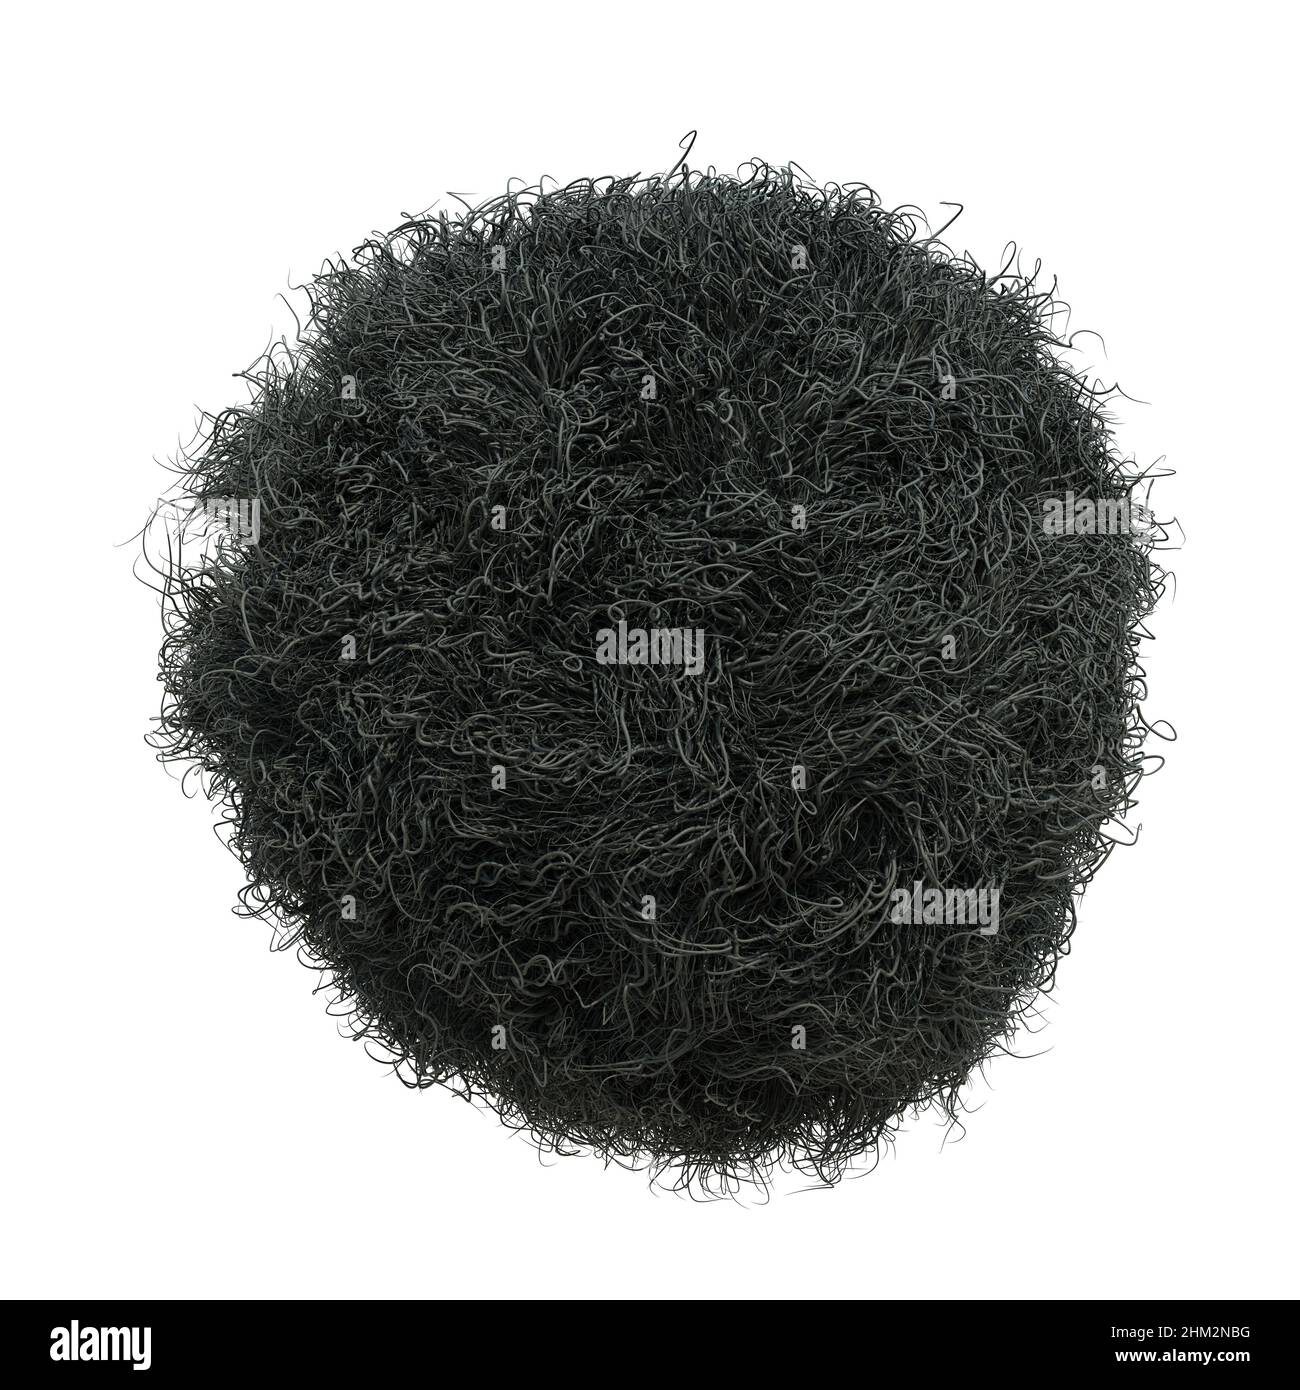 Flauschige Kugel, pelzige schwarze Kugel isoliert auf weißem Hintergrund Stockfoto